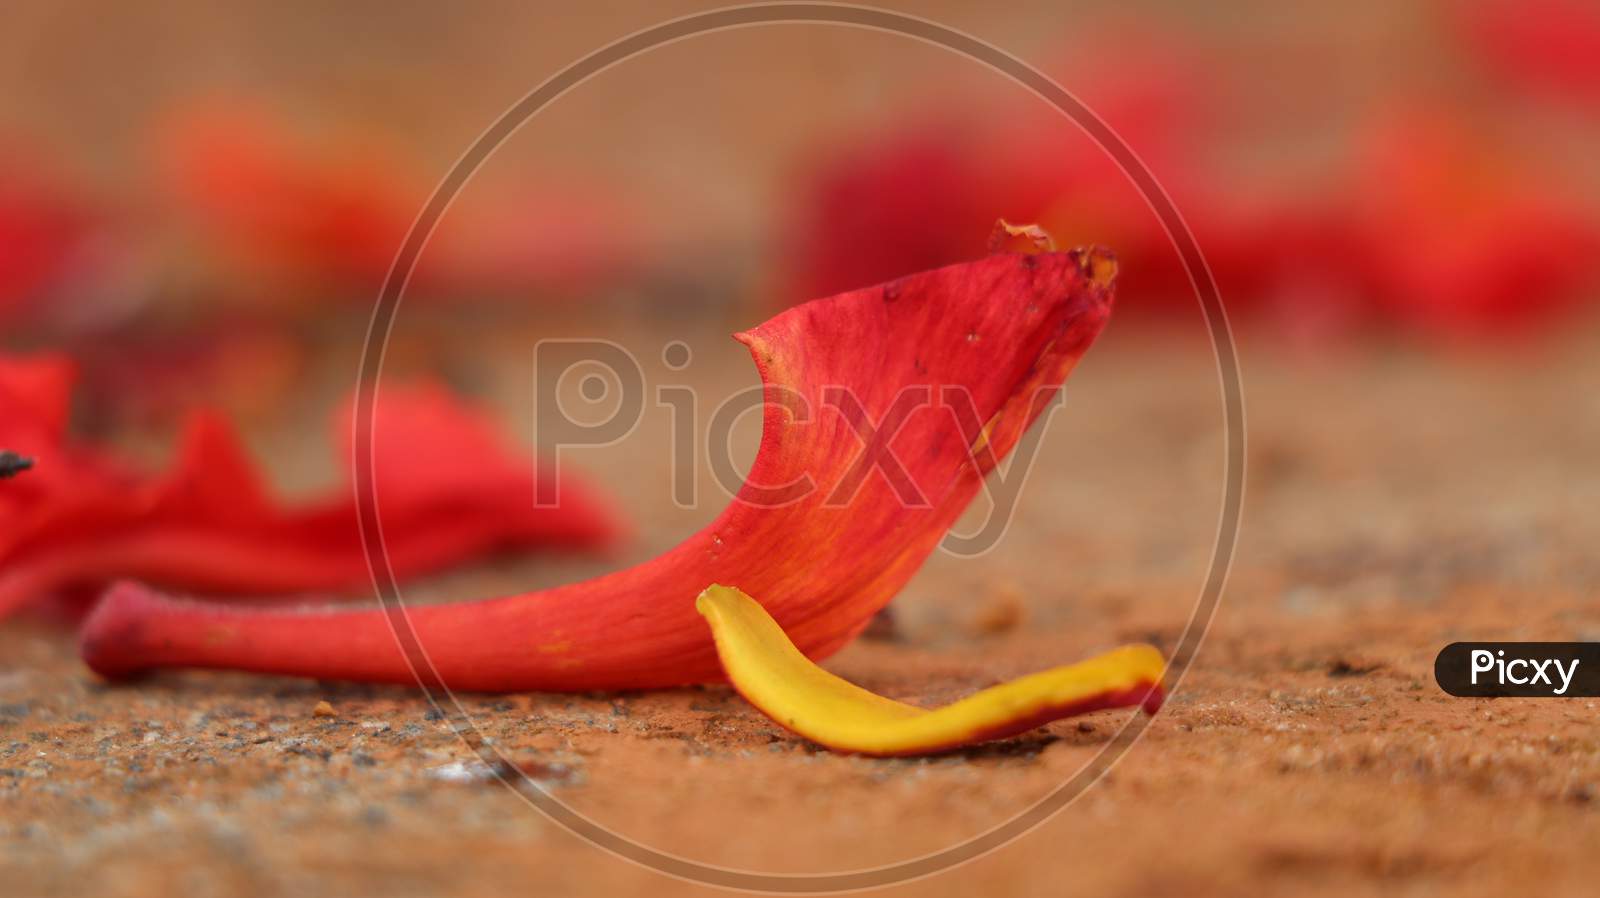 Fallen petals of gulmohar(delonix regia)